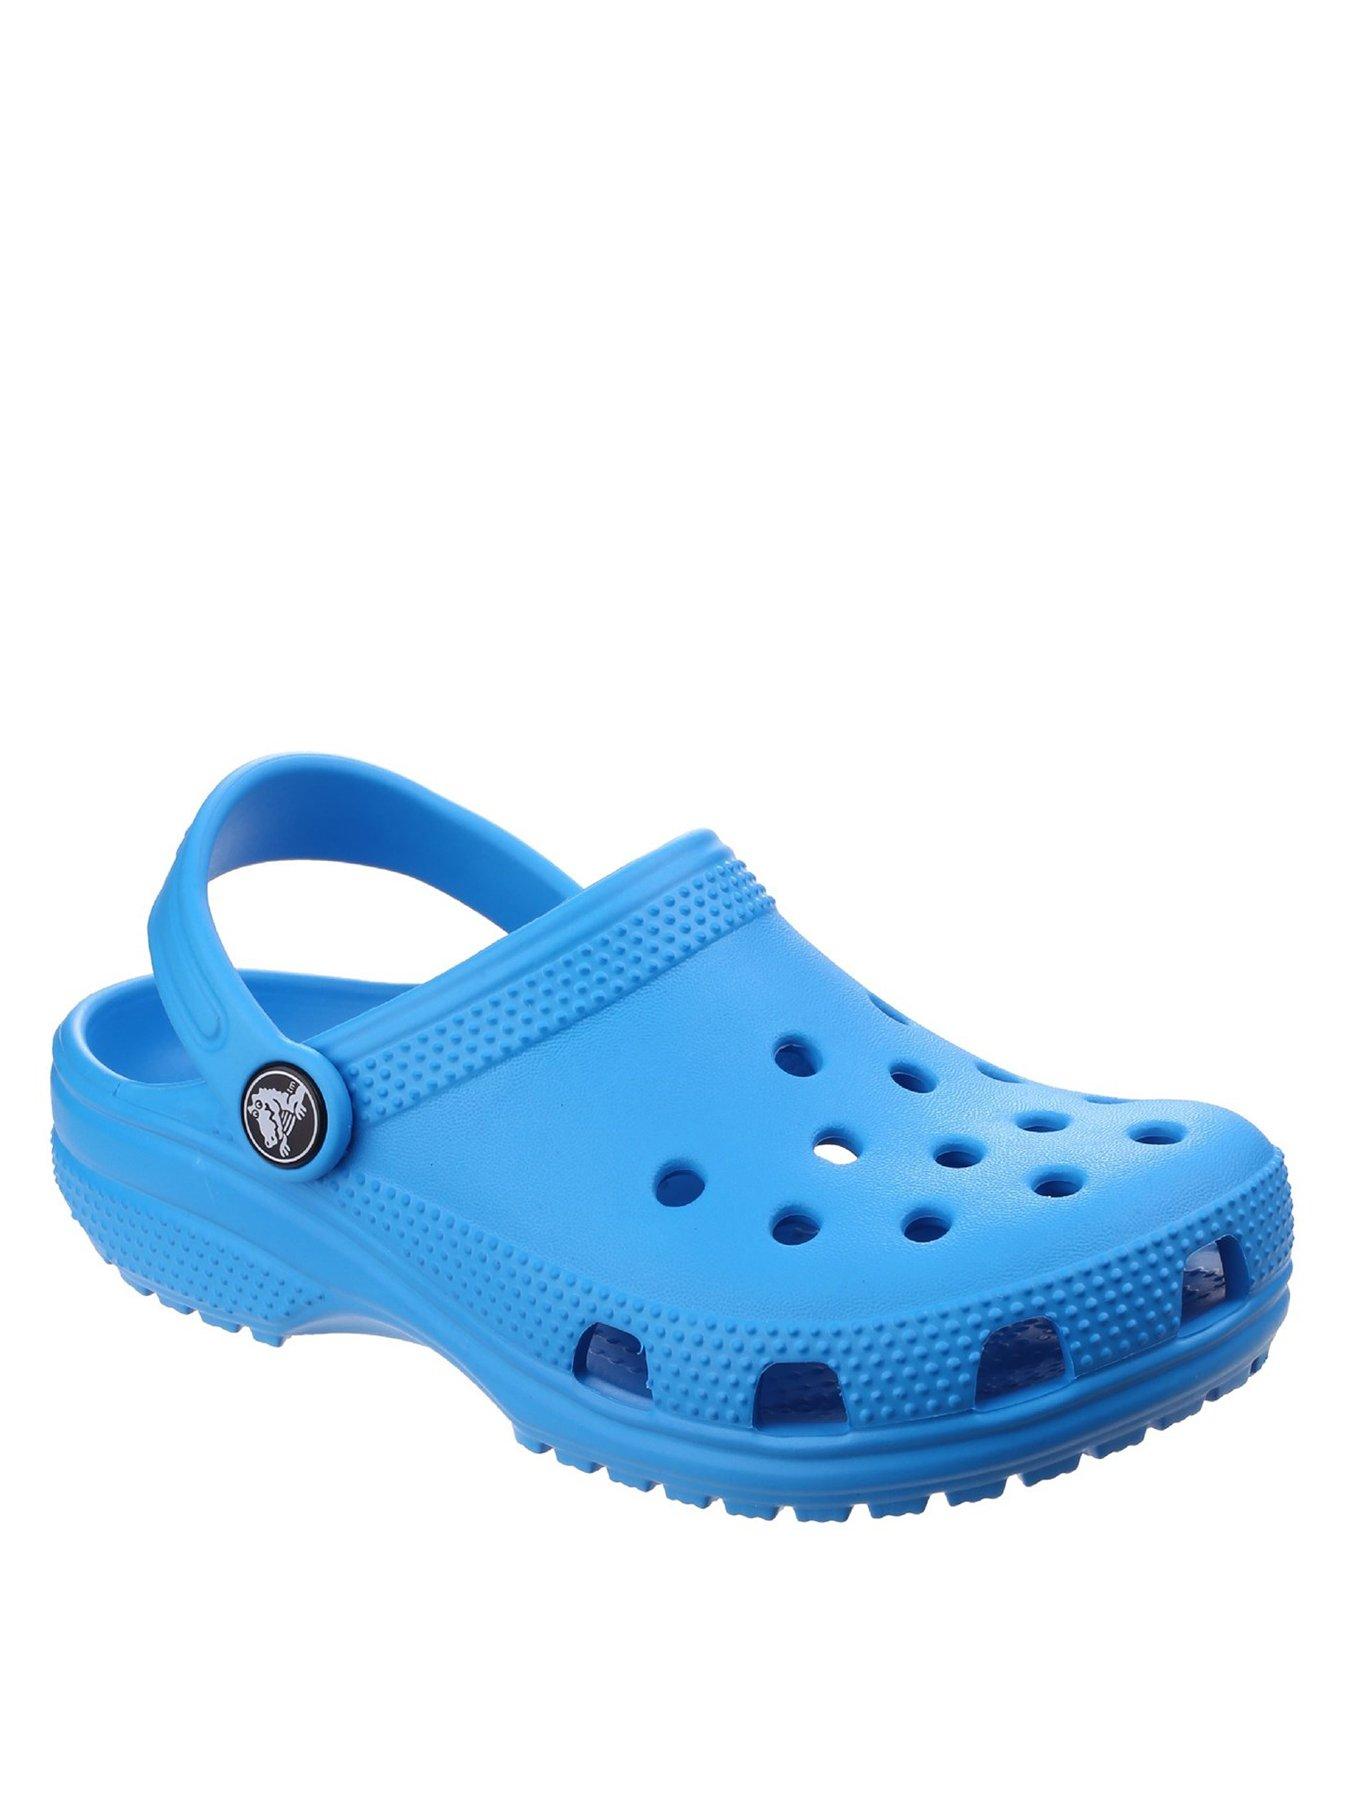 Crocs Classic Clog Slip On 